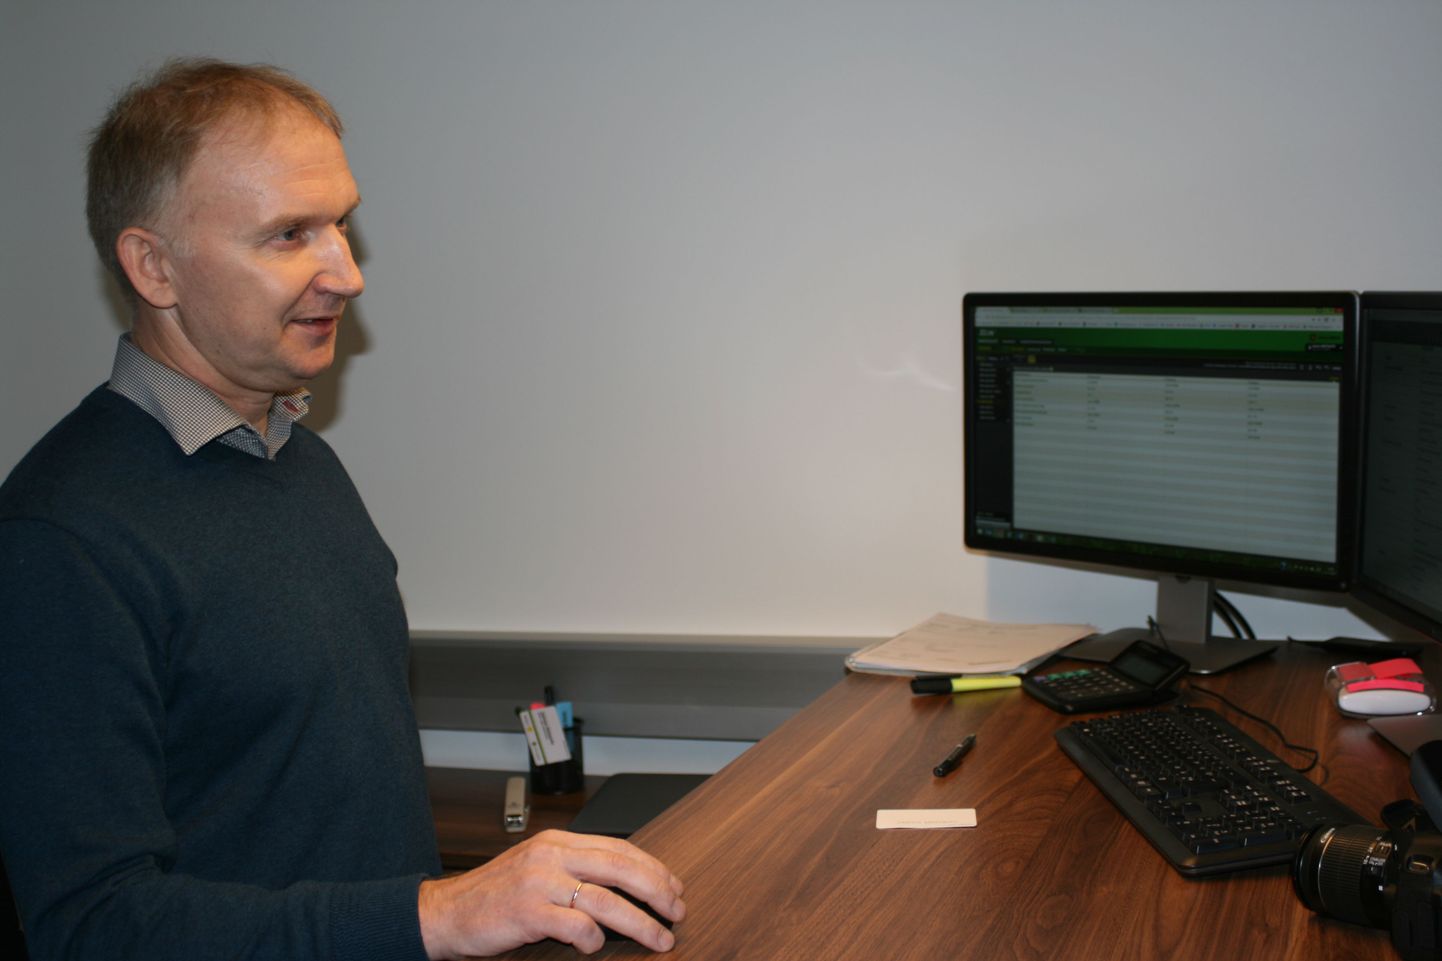 Baltic Agro Machinery hooldusjuht Jaanus Metsaots juhatab hooldusmeeskondade vägesid arvuti tagant, mille ekraanidel on näha suur osa abivajavast tehnikast.